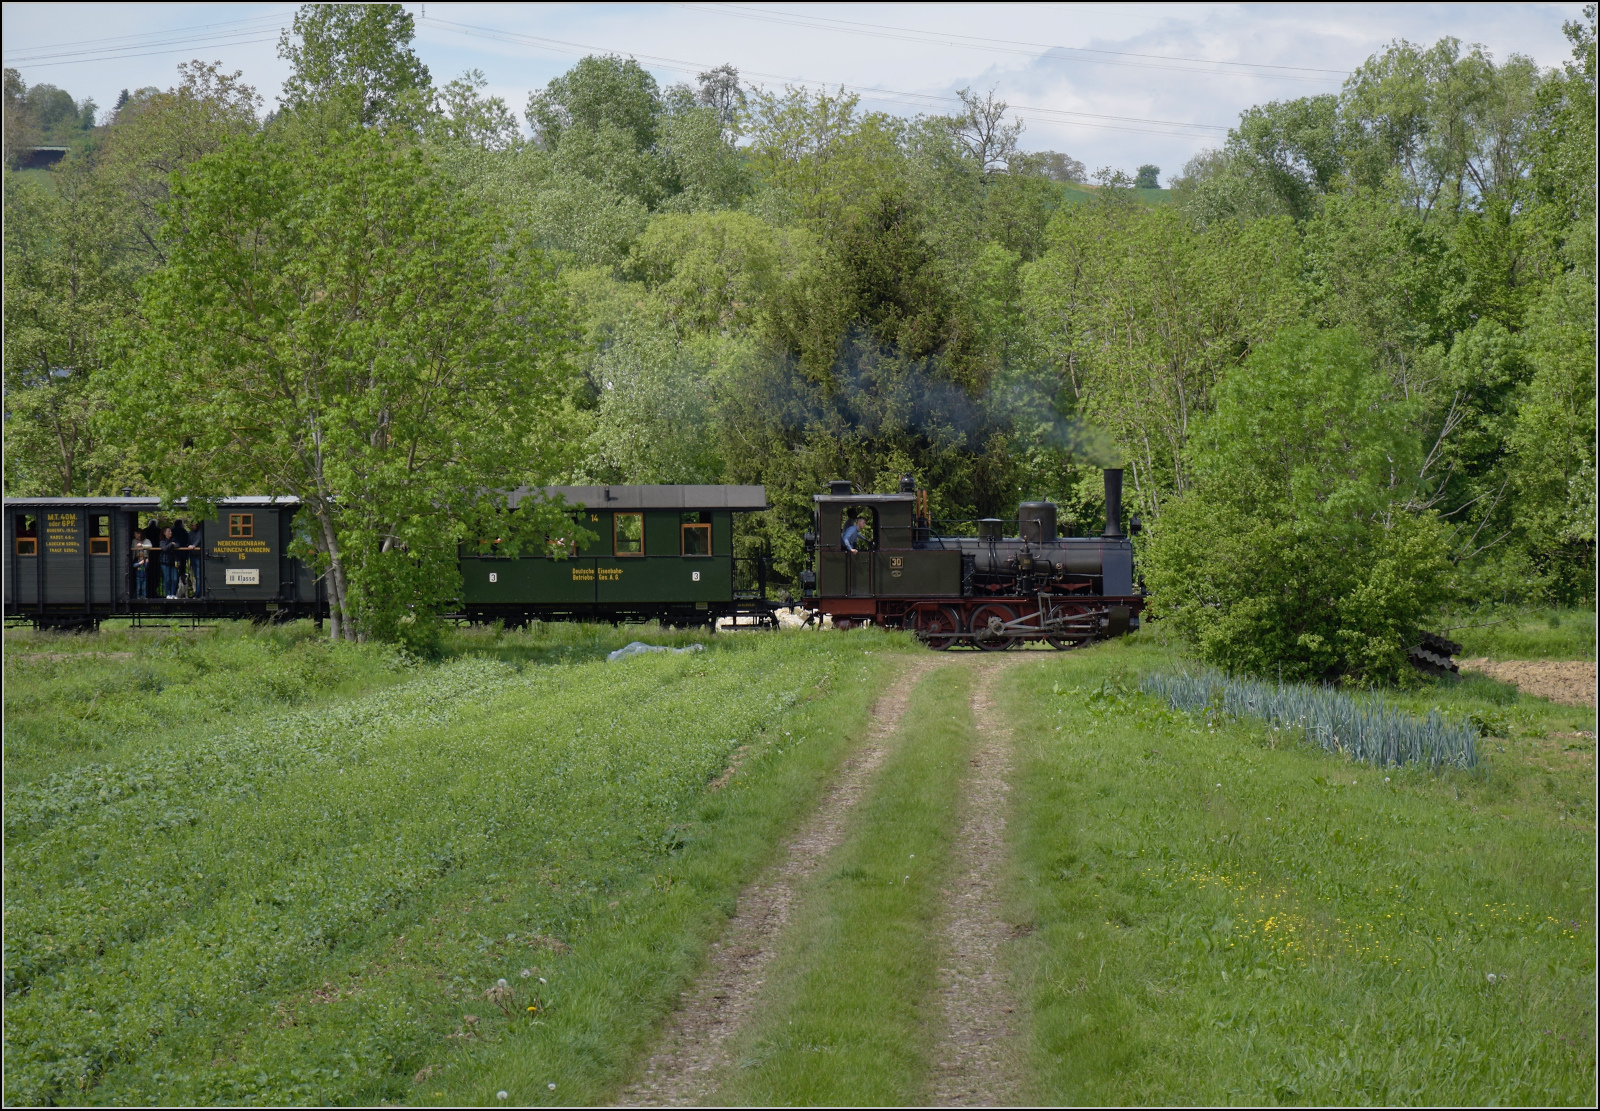 Kandertalbahn im Frhjahr.

Nebeneisenbahn-Museumszug mit Lok 30 bei Binzen. Mai 2024.